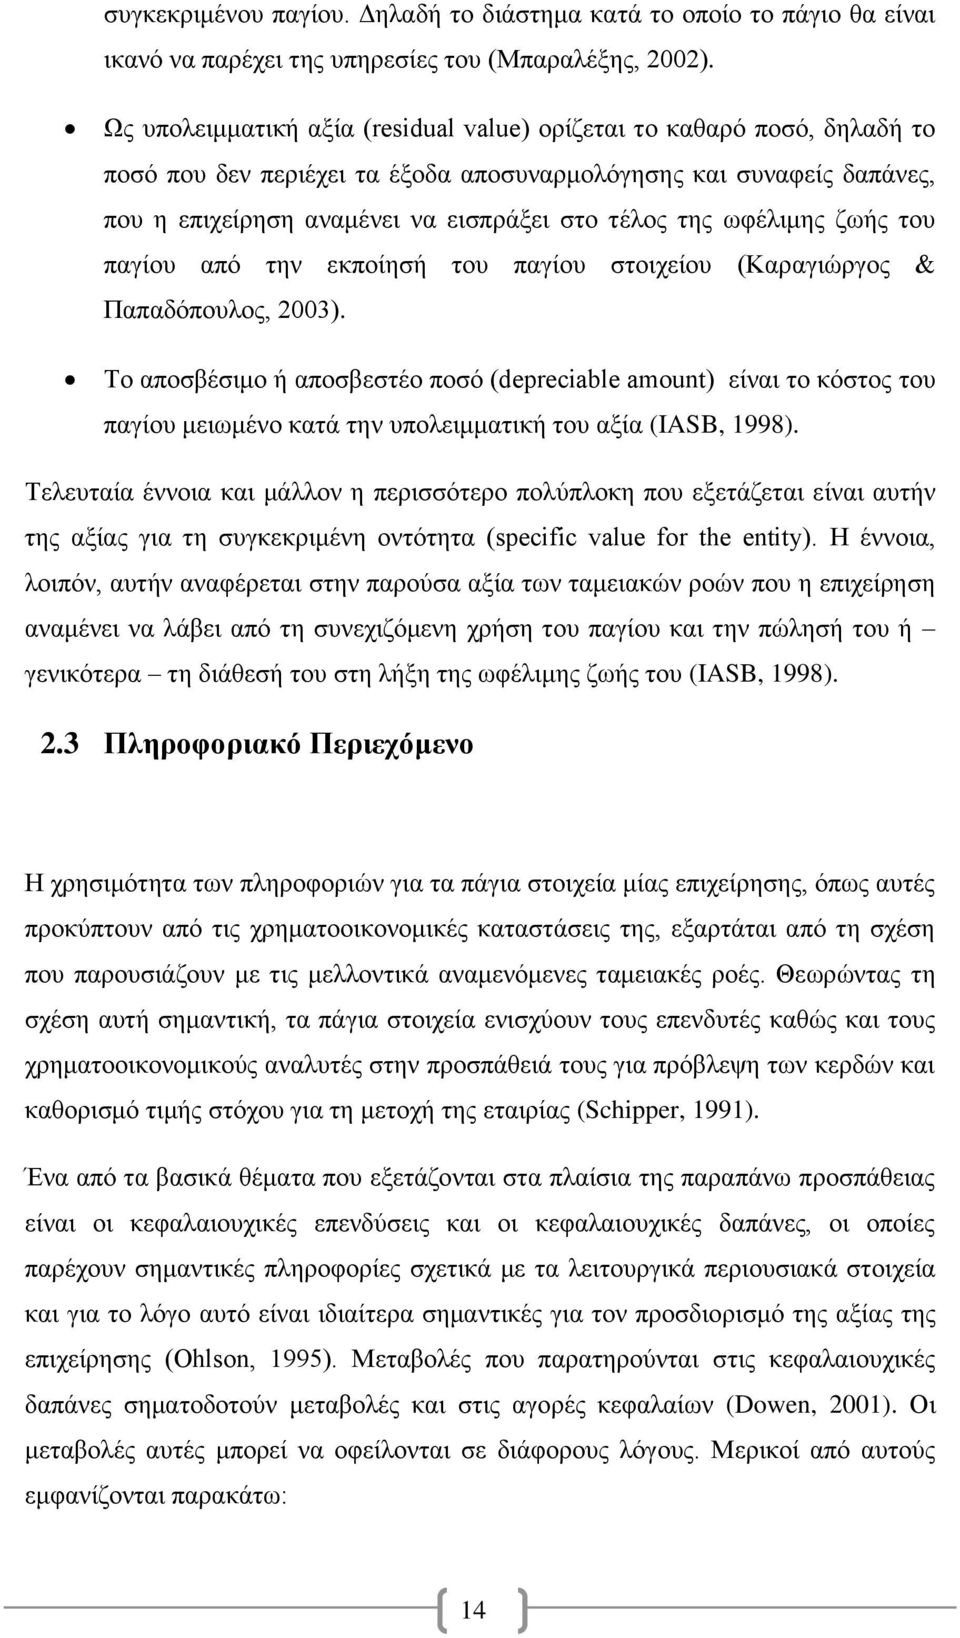 ωφέλιμης ζωής του παγίου από την εκποίησή του παγίου στοιχείου (Καραγιώργος & Παπαδόπουλος, 2003).